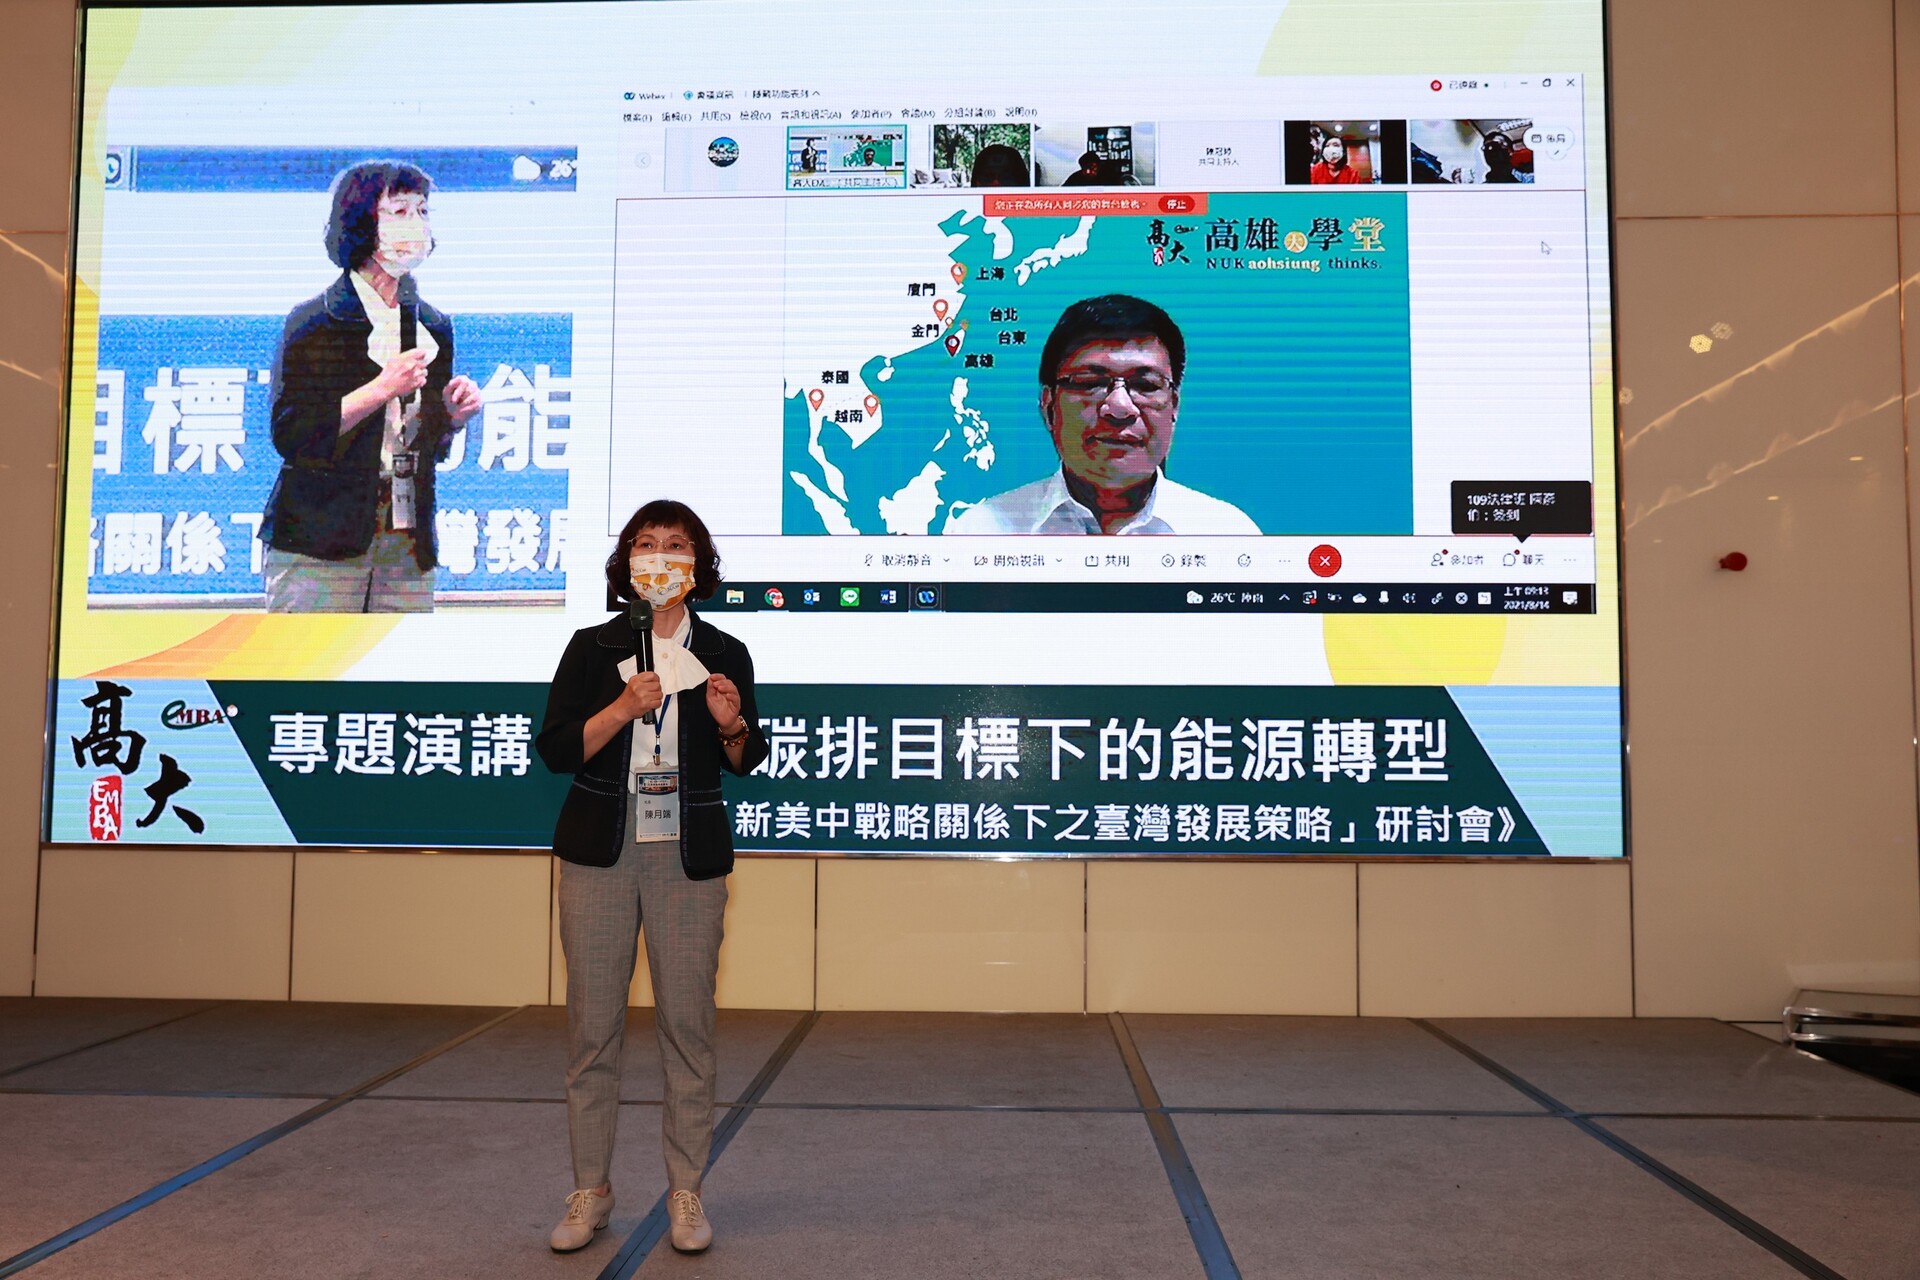 高雄大學校長陳月端為14日研討會開場，歡迎經濟部次長曾文生（螢幕右側人像）。